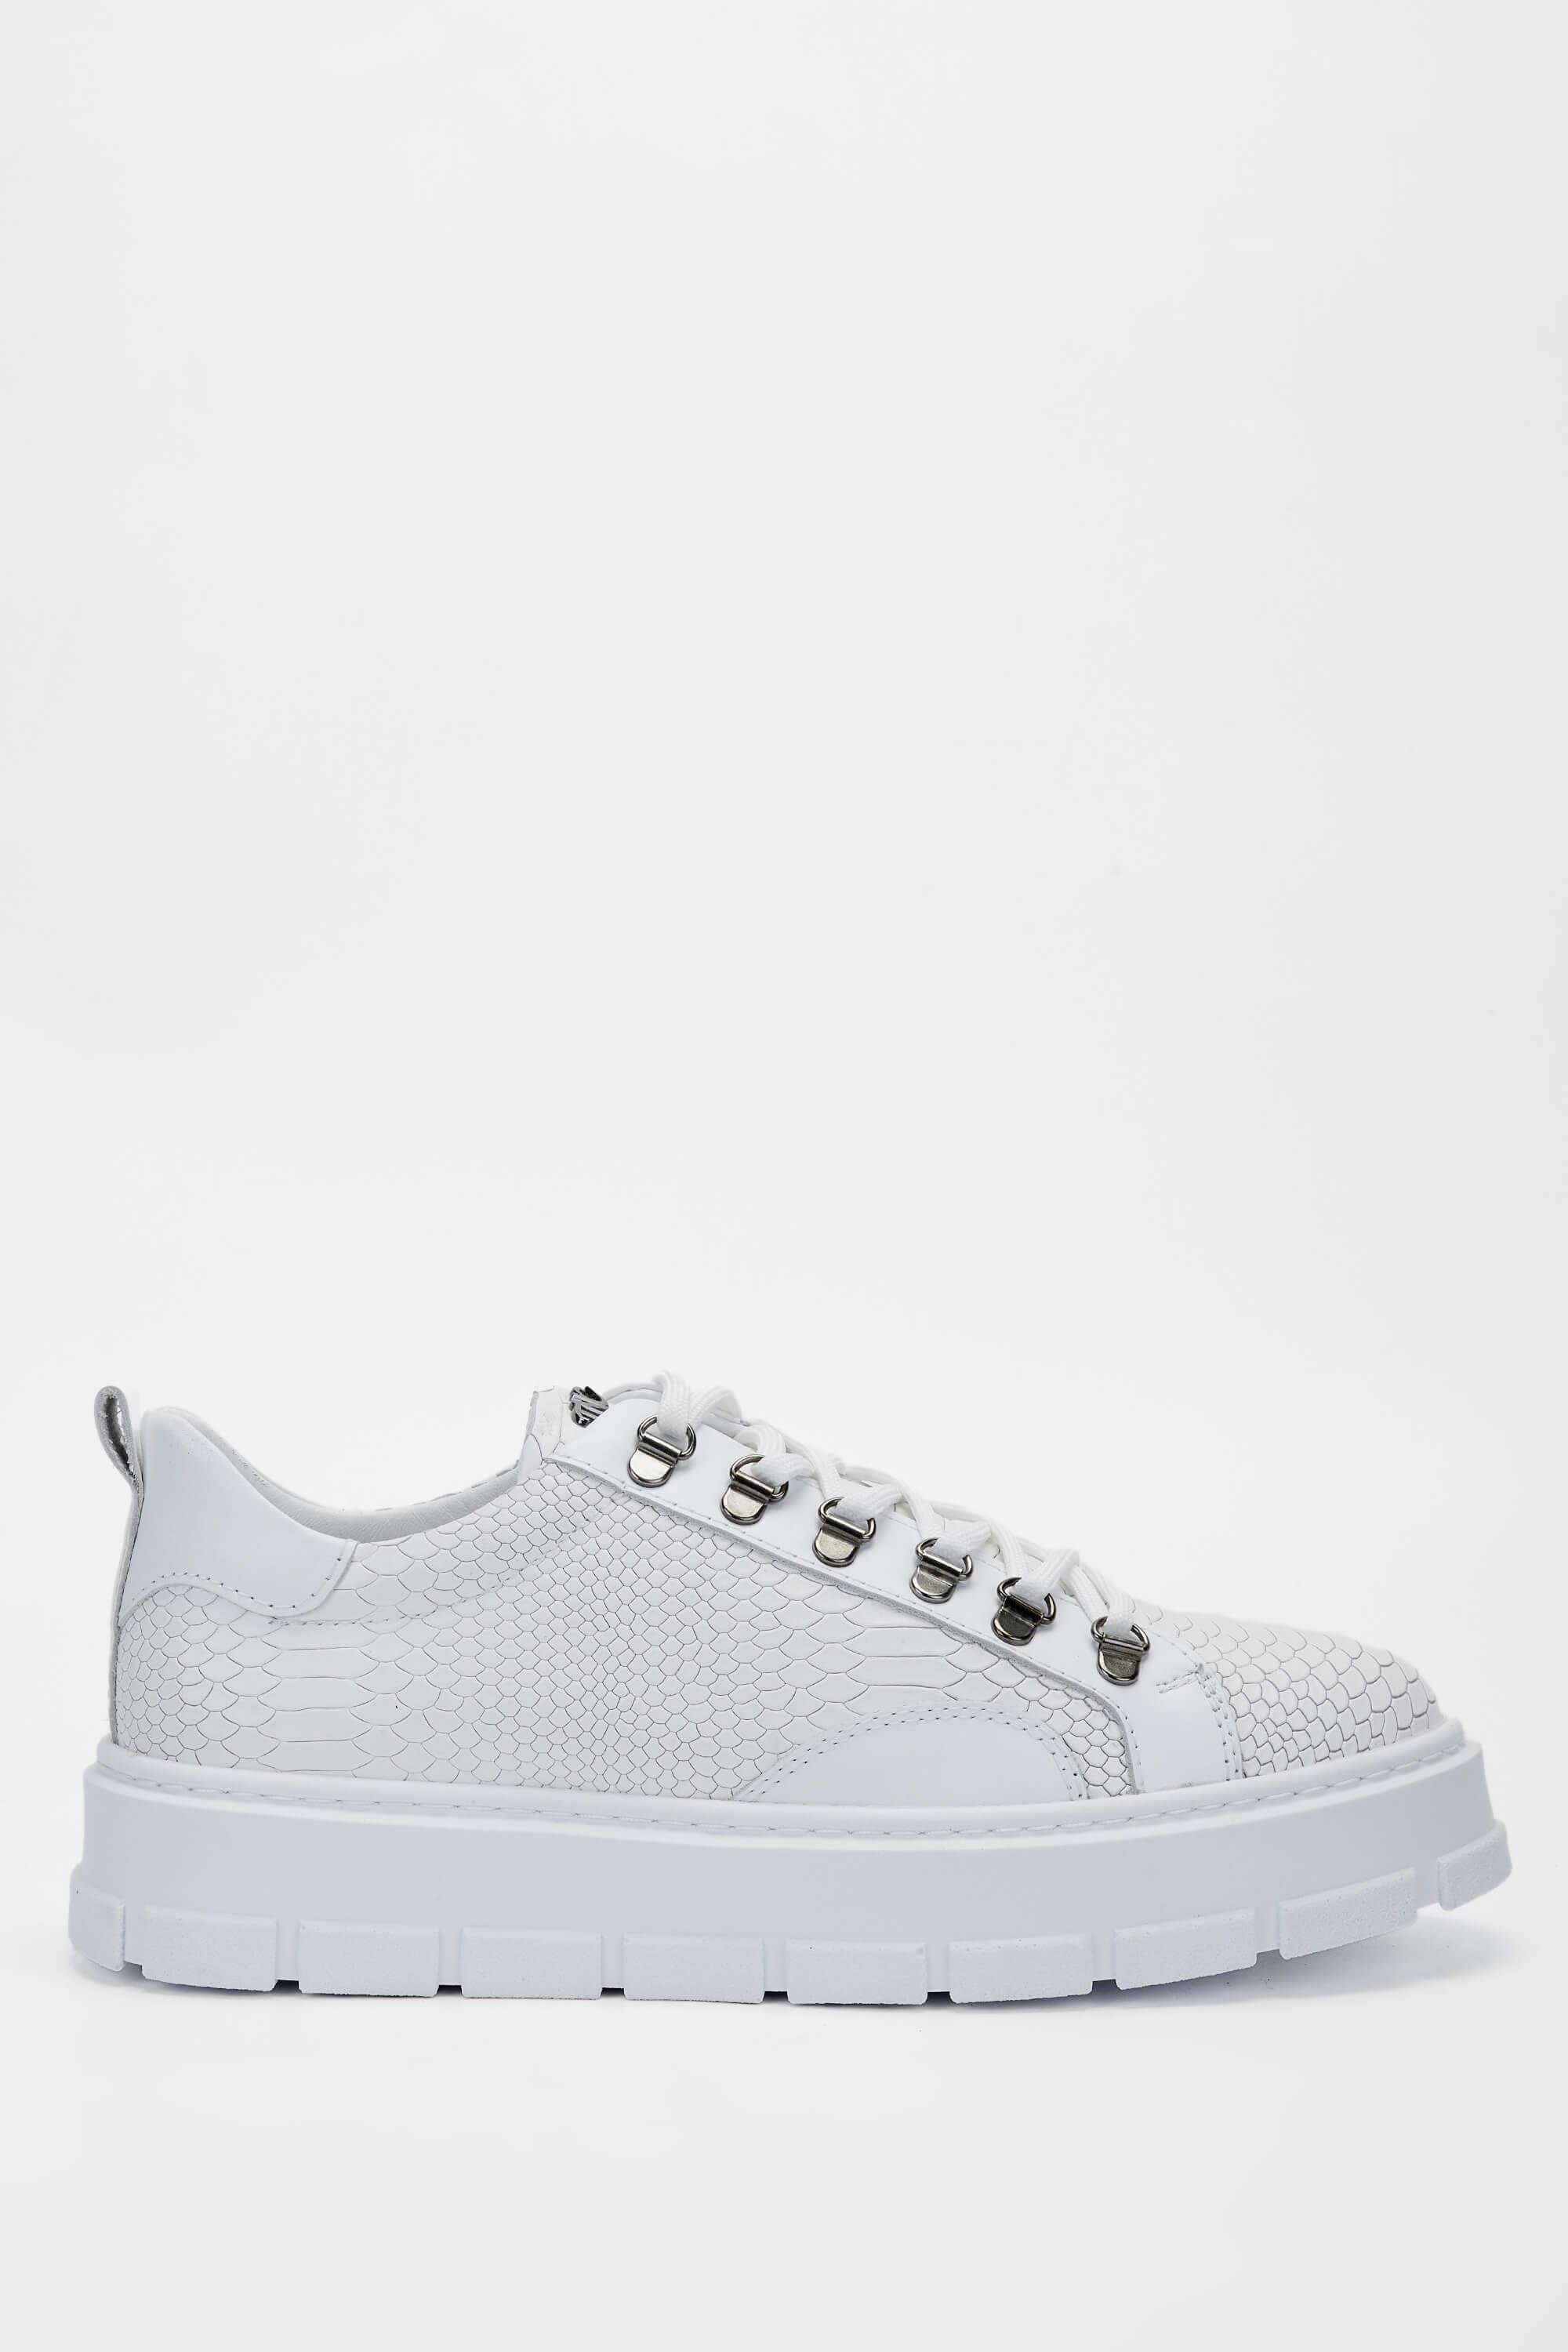 Tamer Tanca Erkek Hakiki Deri Beyaz Sneakers & Spor Ayakkabı